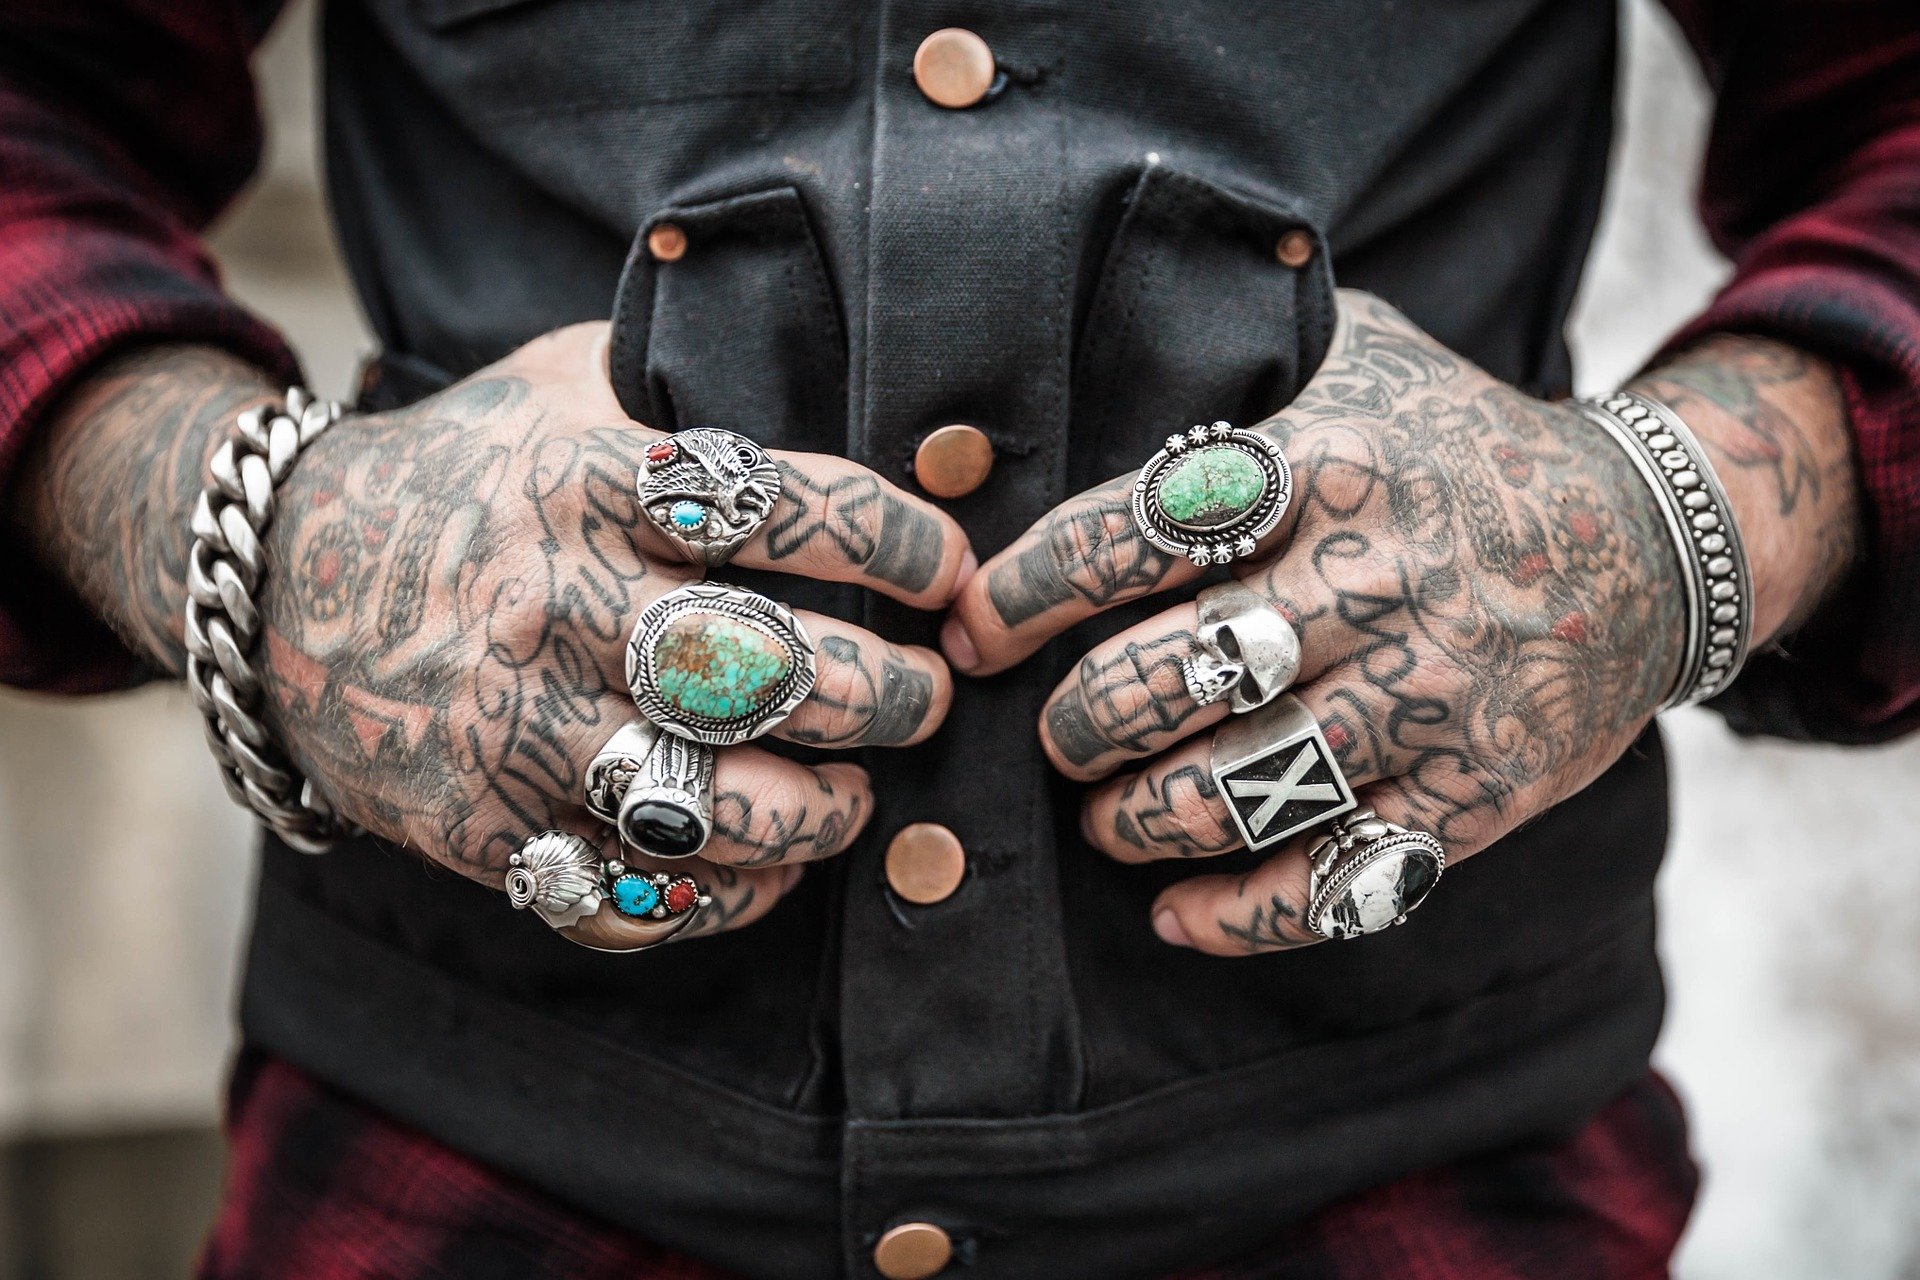 Entretien tatouage : comment prendre soin d’un tattoo